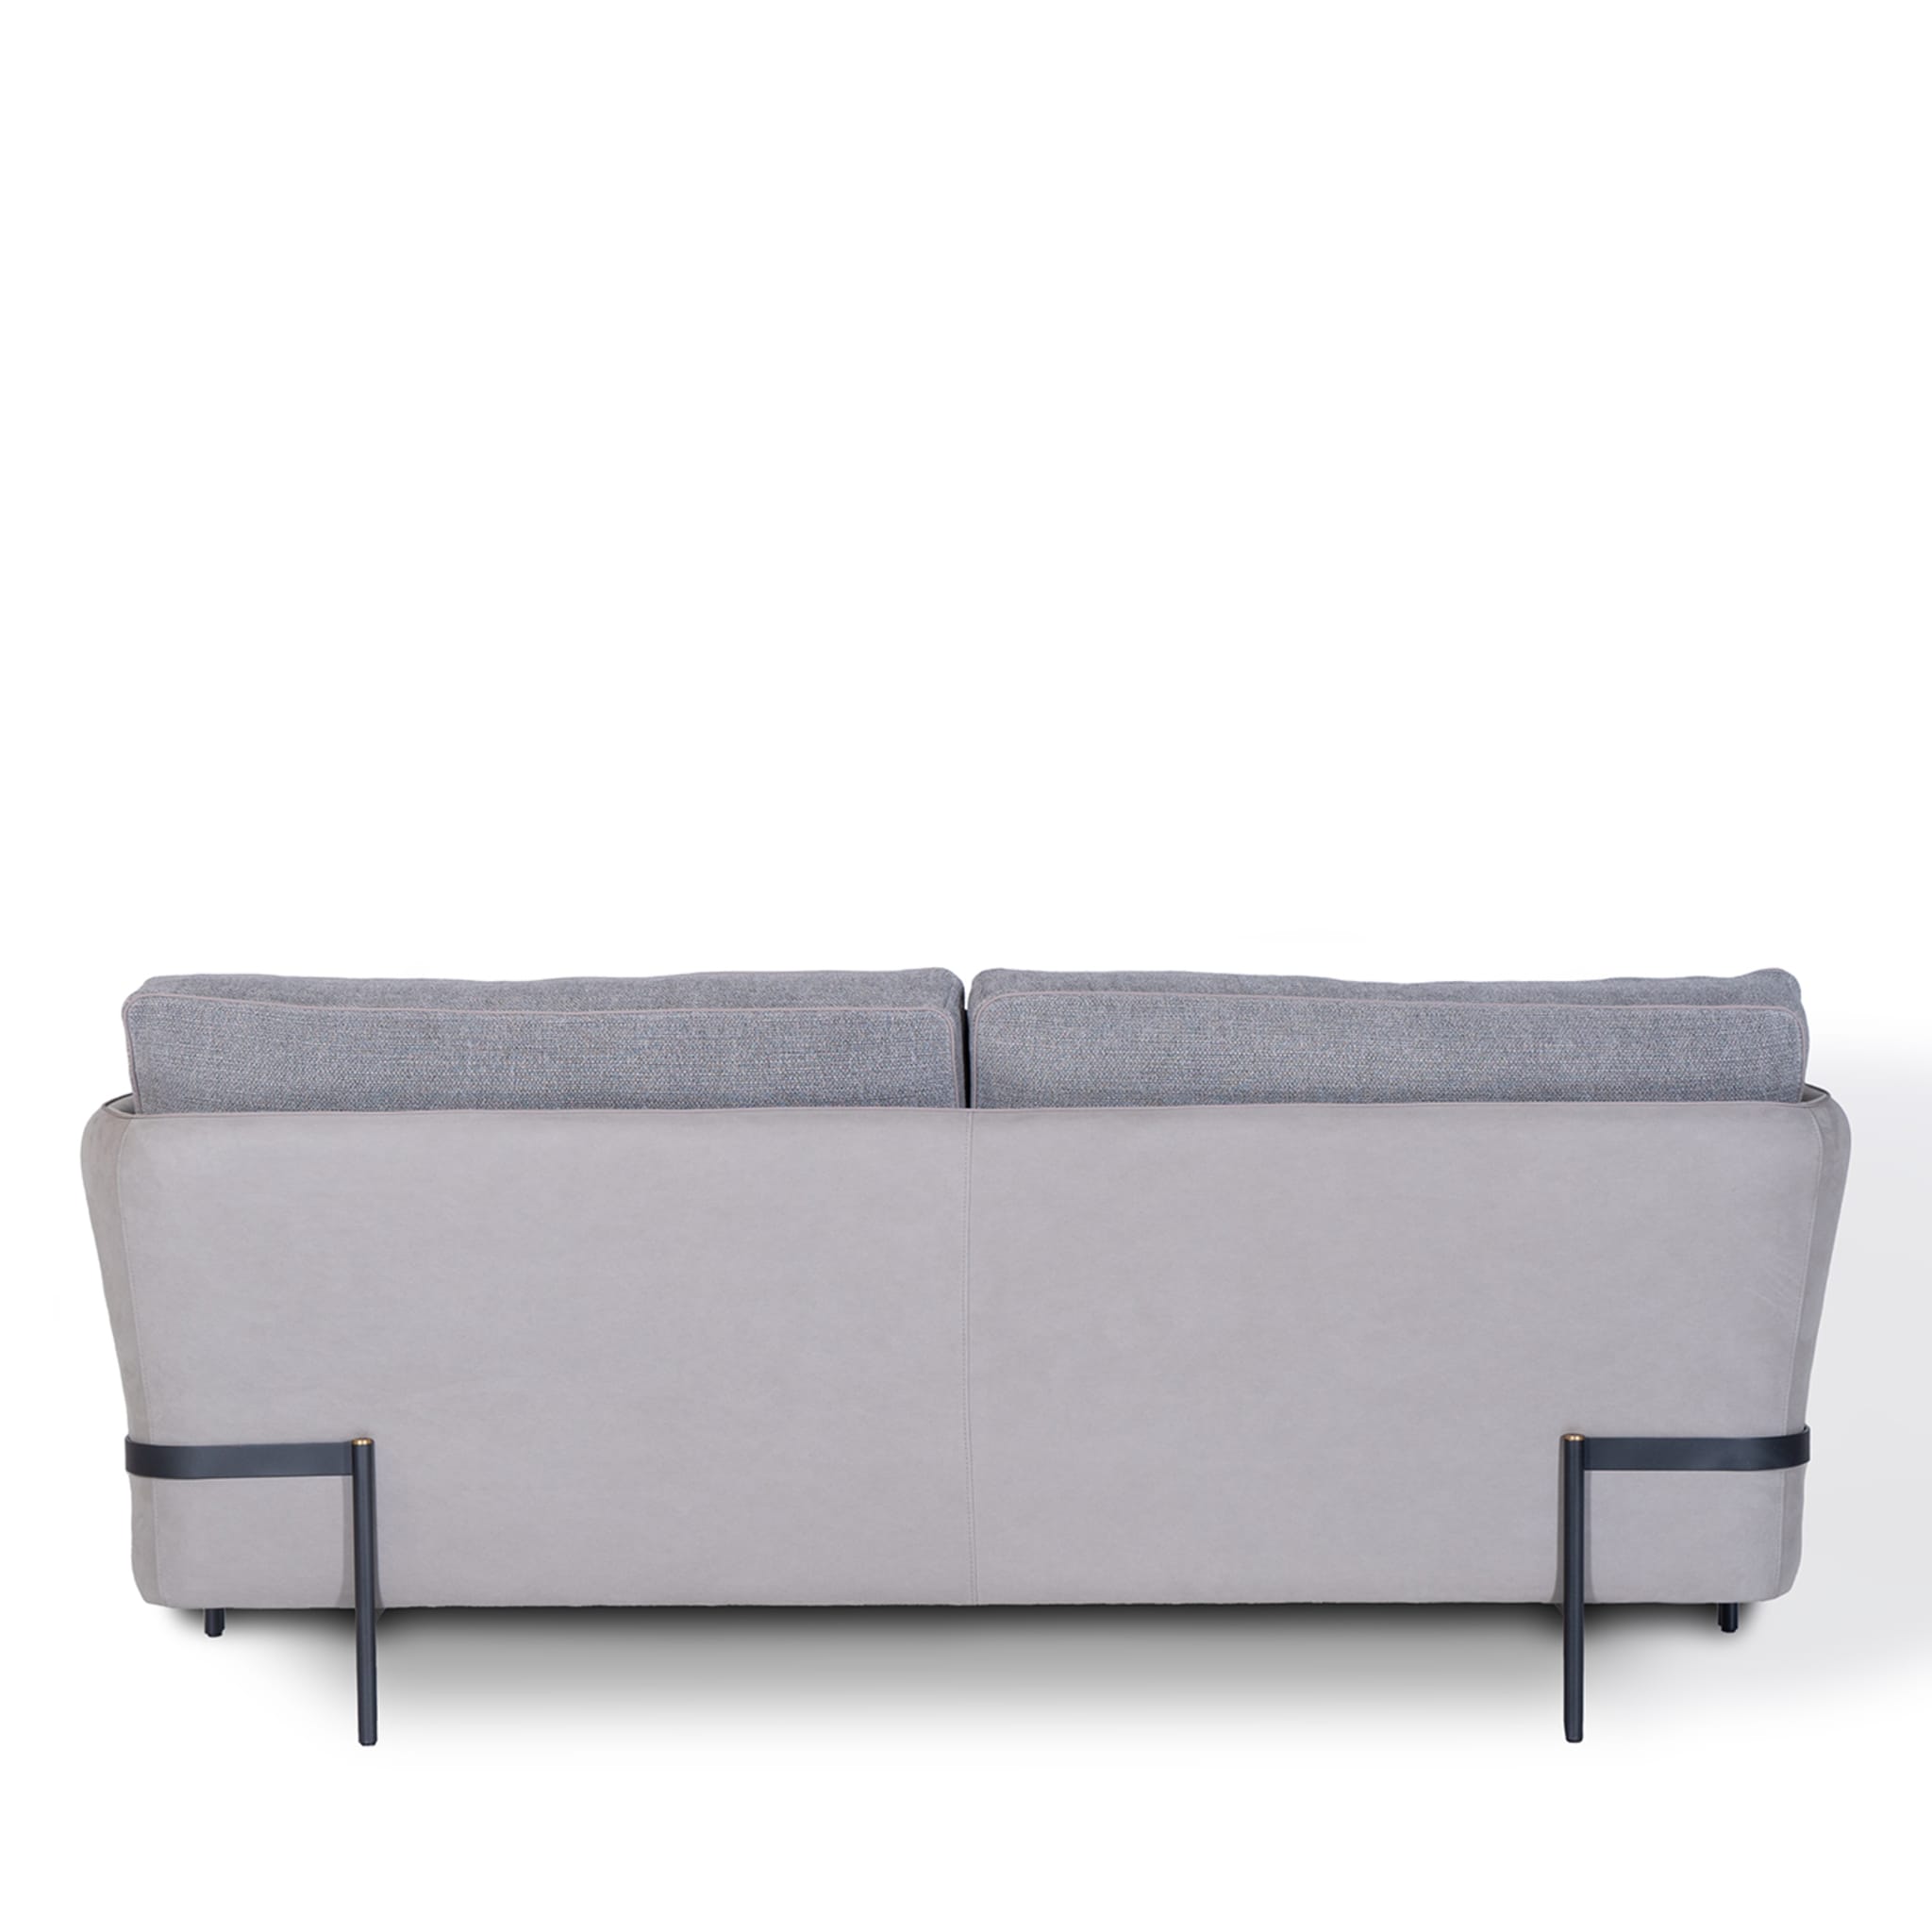 Universal Gray Sofa by Marco & Giulio Mantellassi  - Alternative view 2